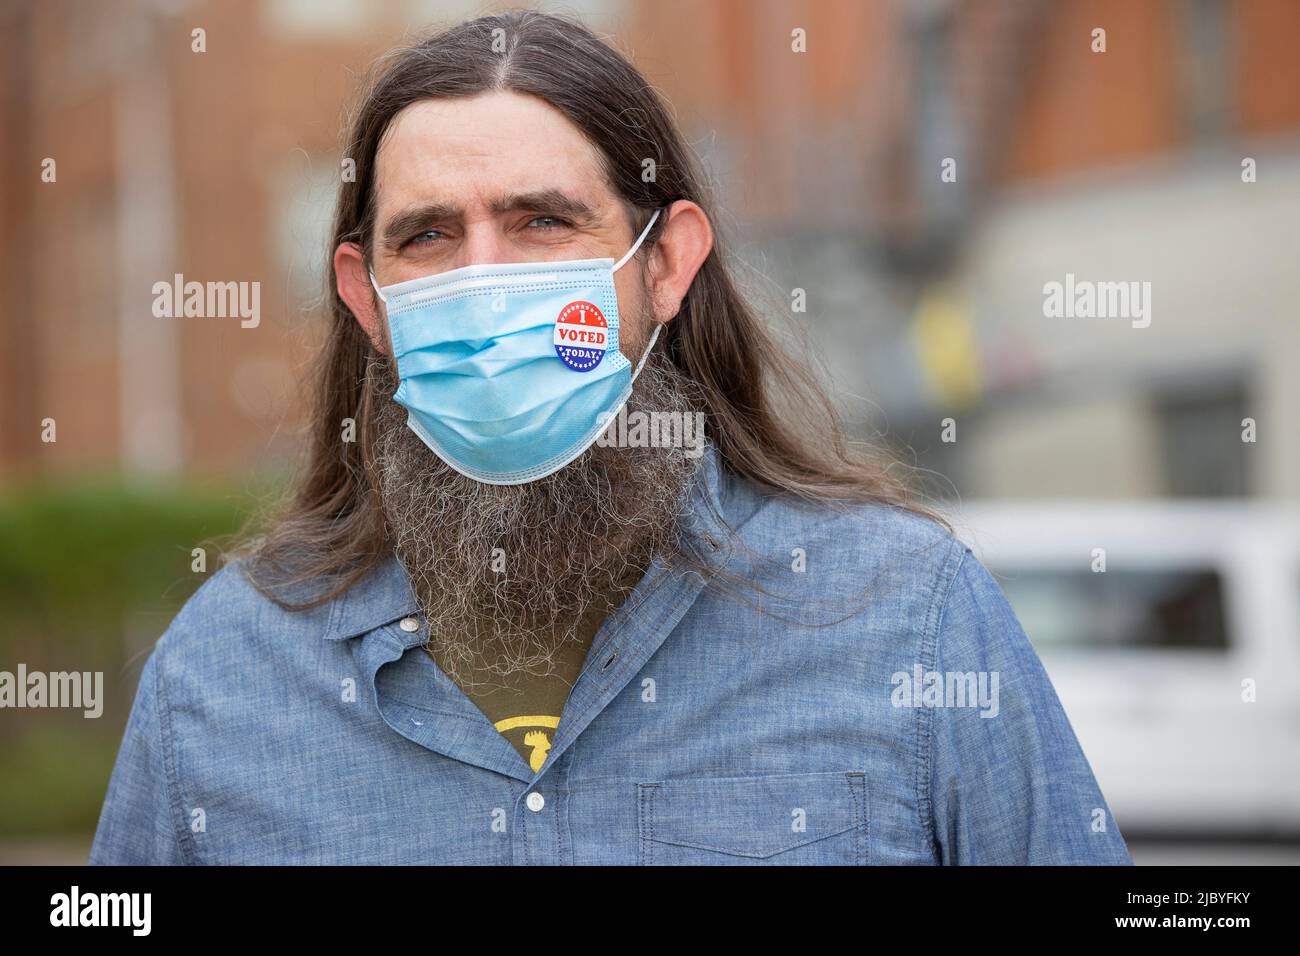 Homme caucasien avec de longs cheveux et une barbe complète portant un masque et un autocollant J'ai voté aujourd'hui sur le masque, regardant dans l'appareil photo. Banque D'Images